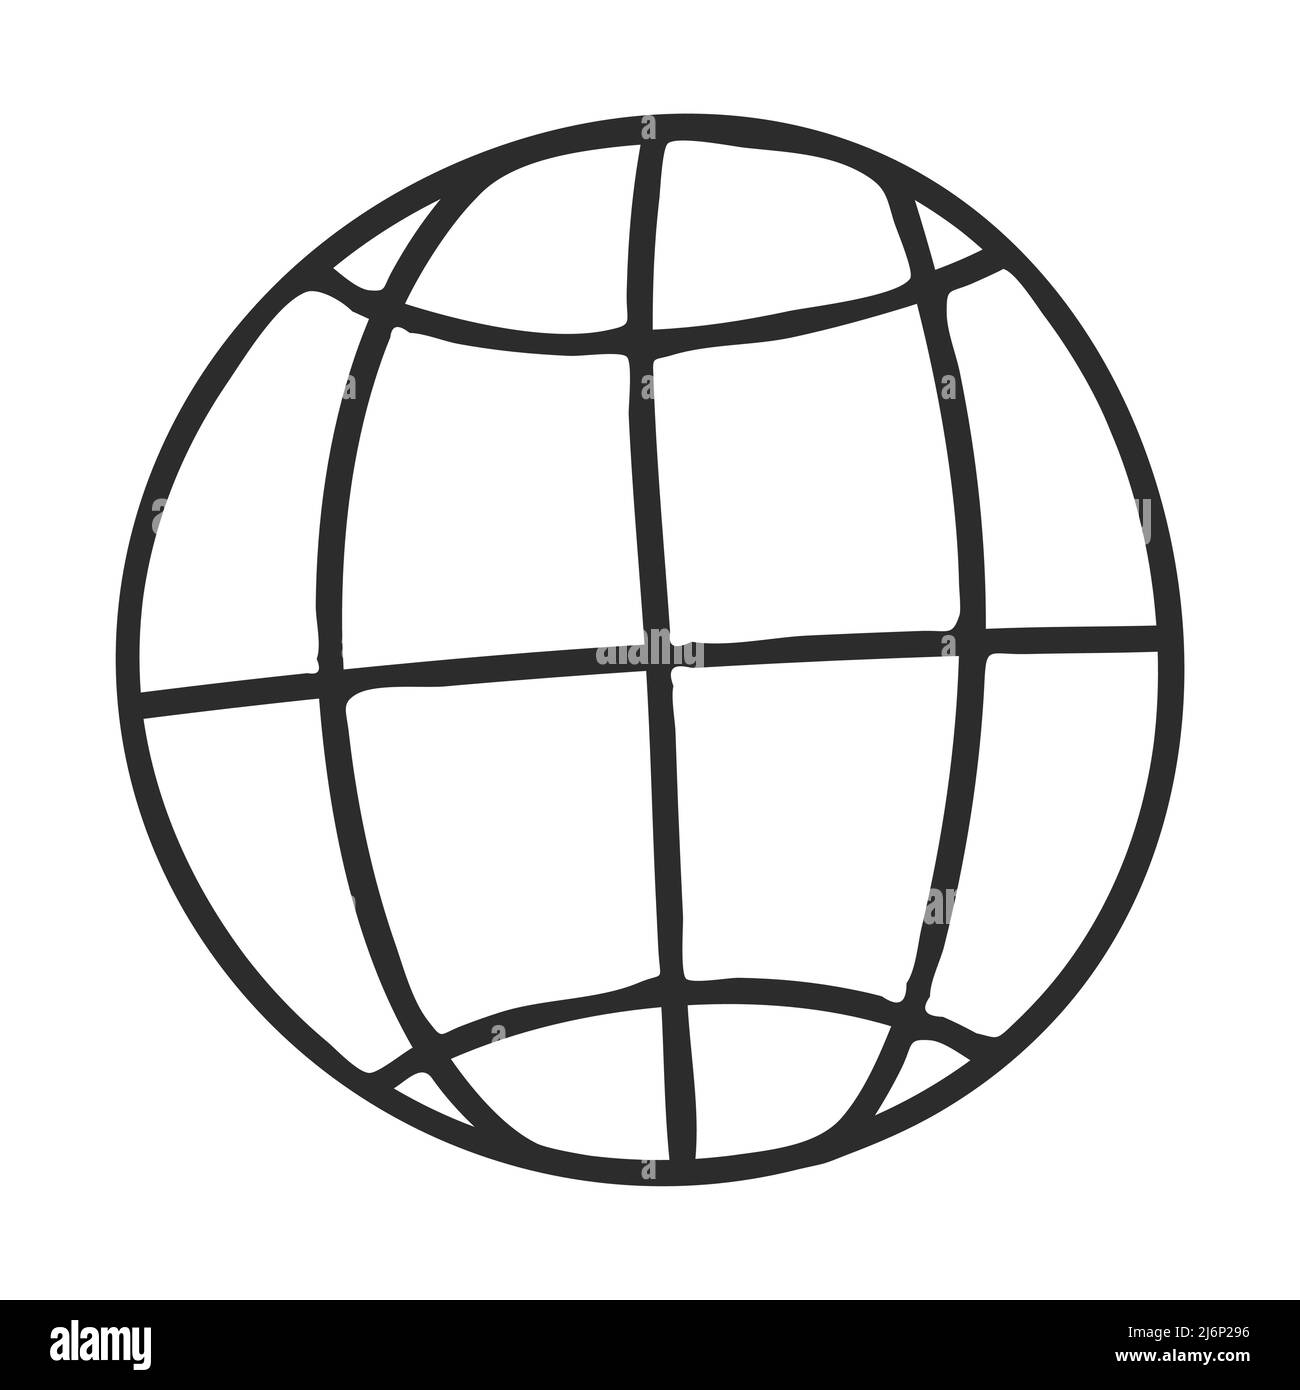 Eine Welt im Doodle-Stil. Der Globus mit Breiten- und Längengrad. Symbol des Planeten, der Welt. Die Ikone ist handgezeichnet und isoliert auf einem weißen Backgroun Stock Vektor